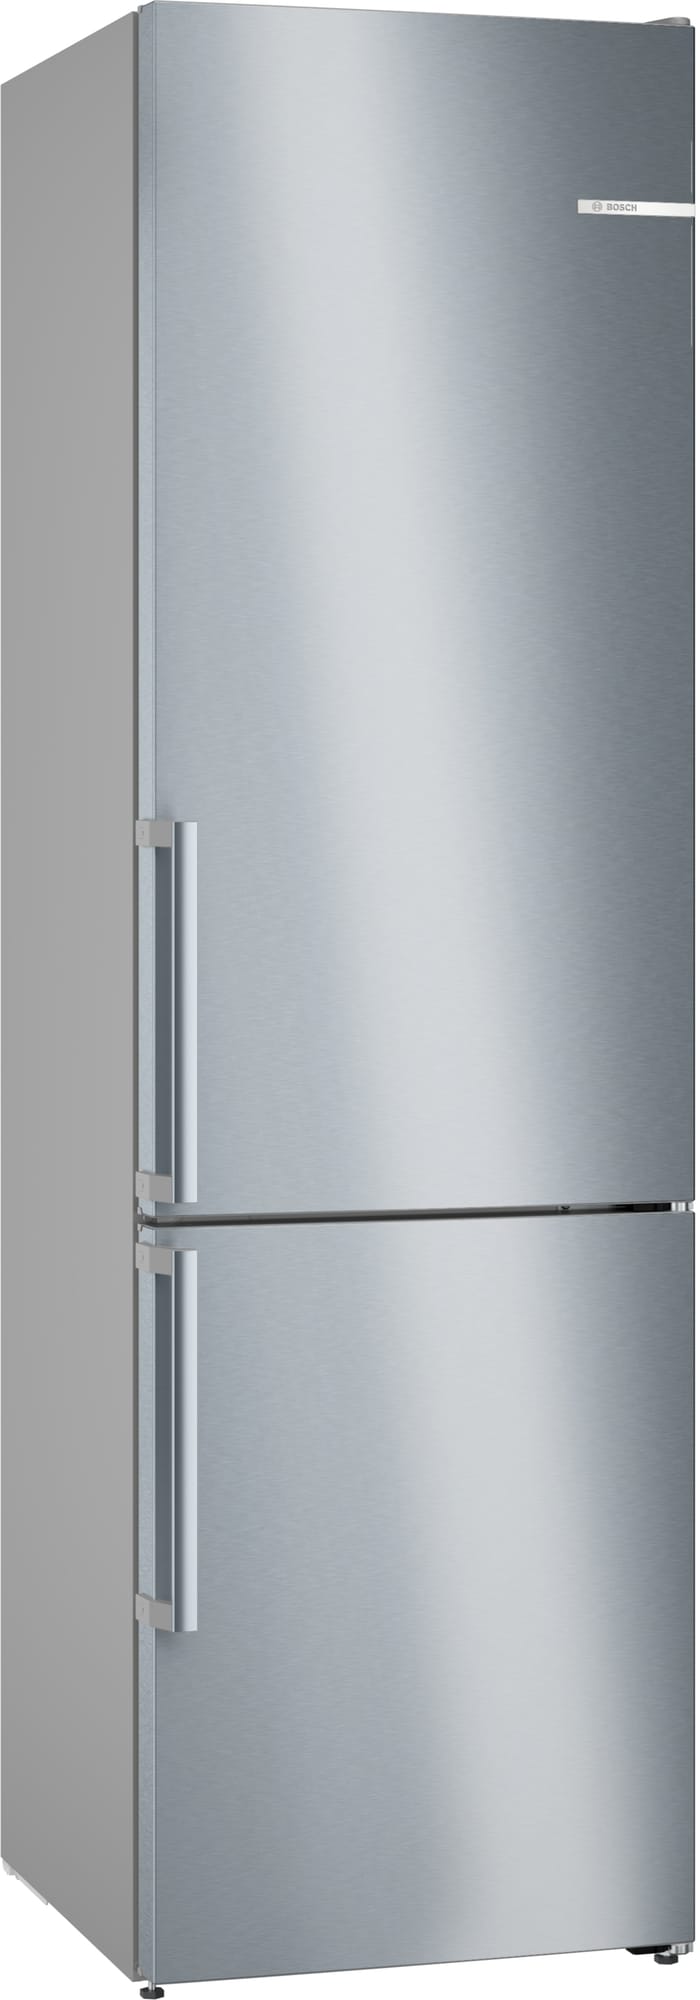 Bosch jääkaappipakastin KGN39AIAT (Inox-easyclean) - Gigantti verkkokauppa